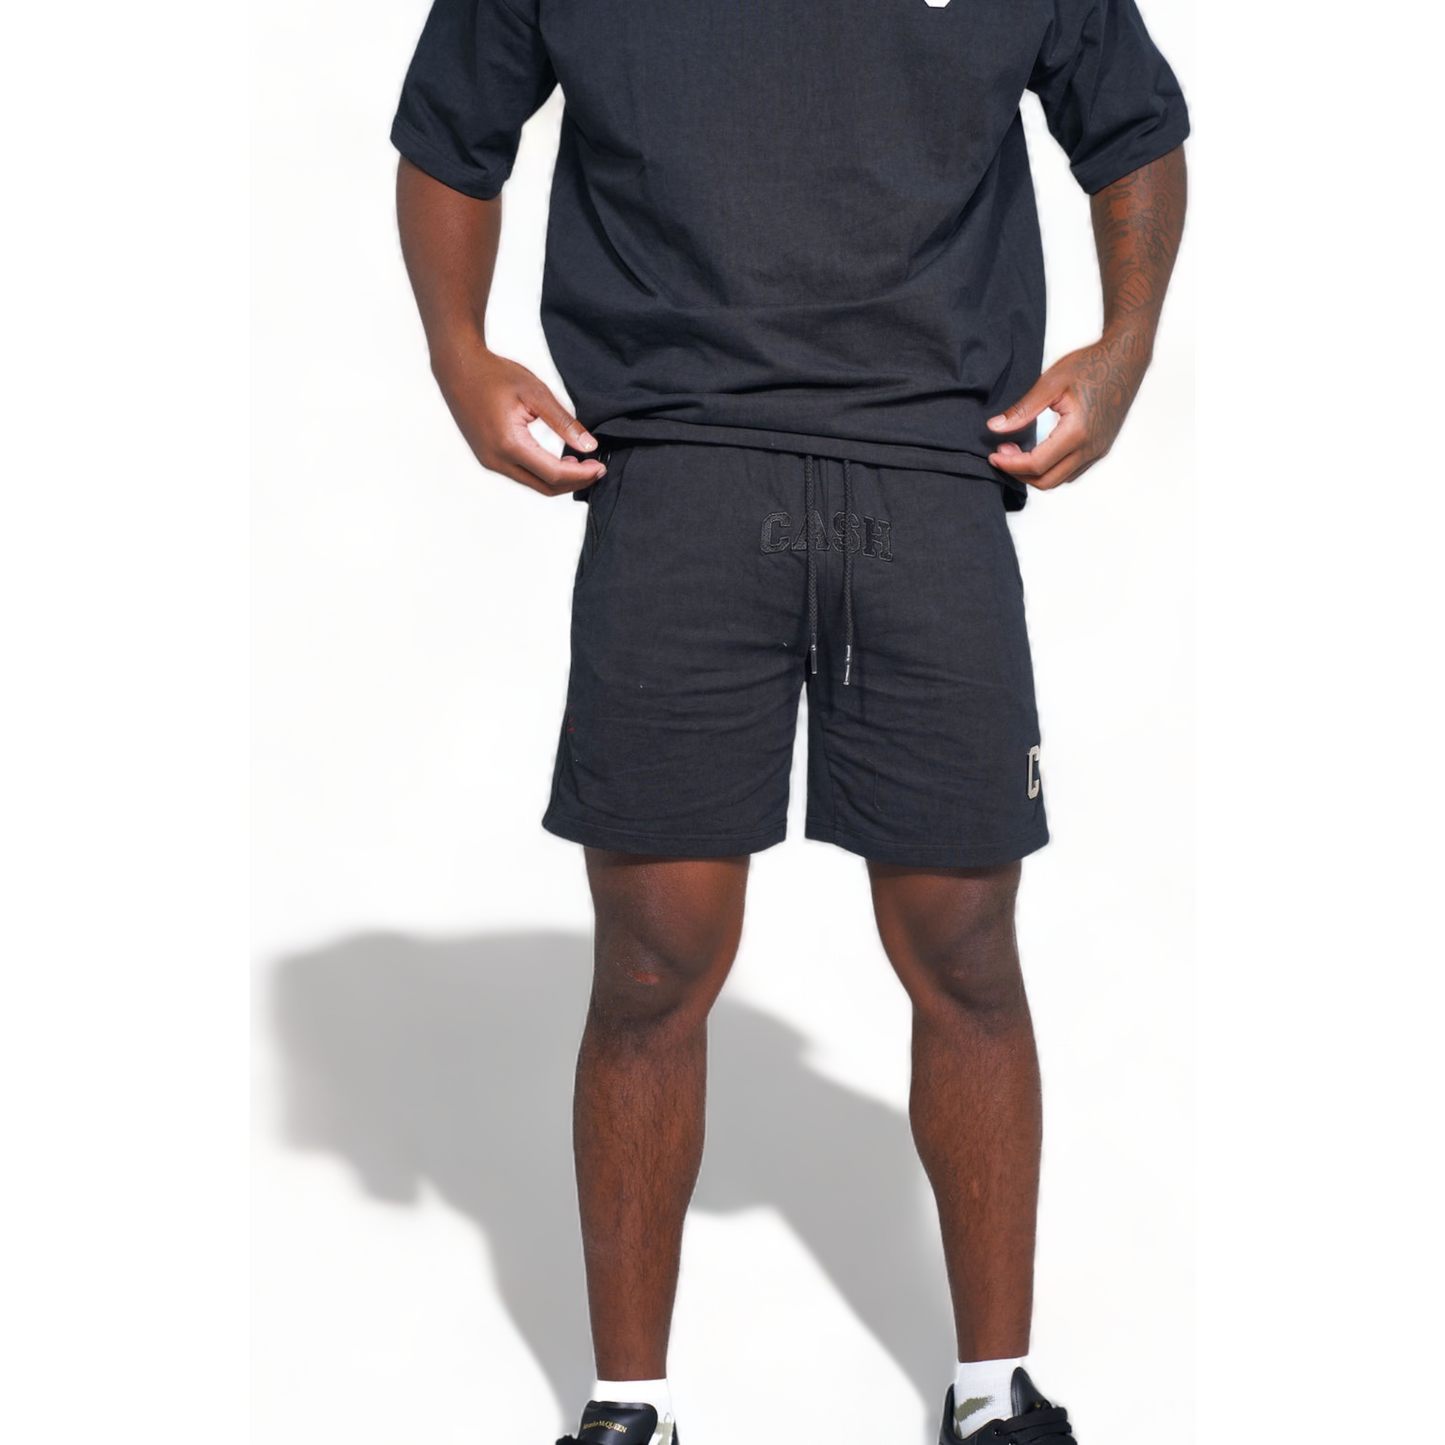 Chrome Shorts : Black